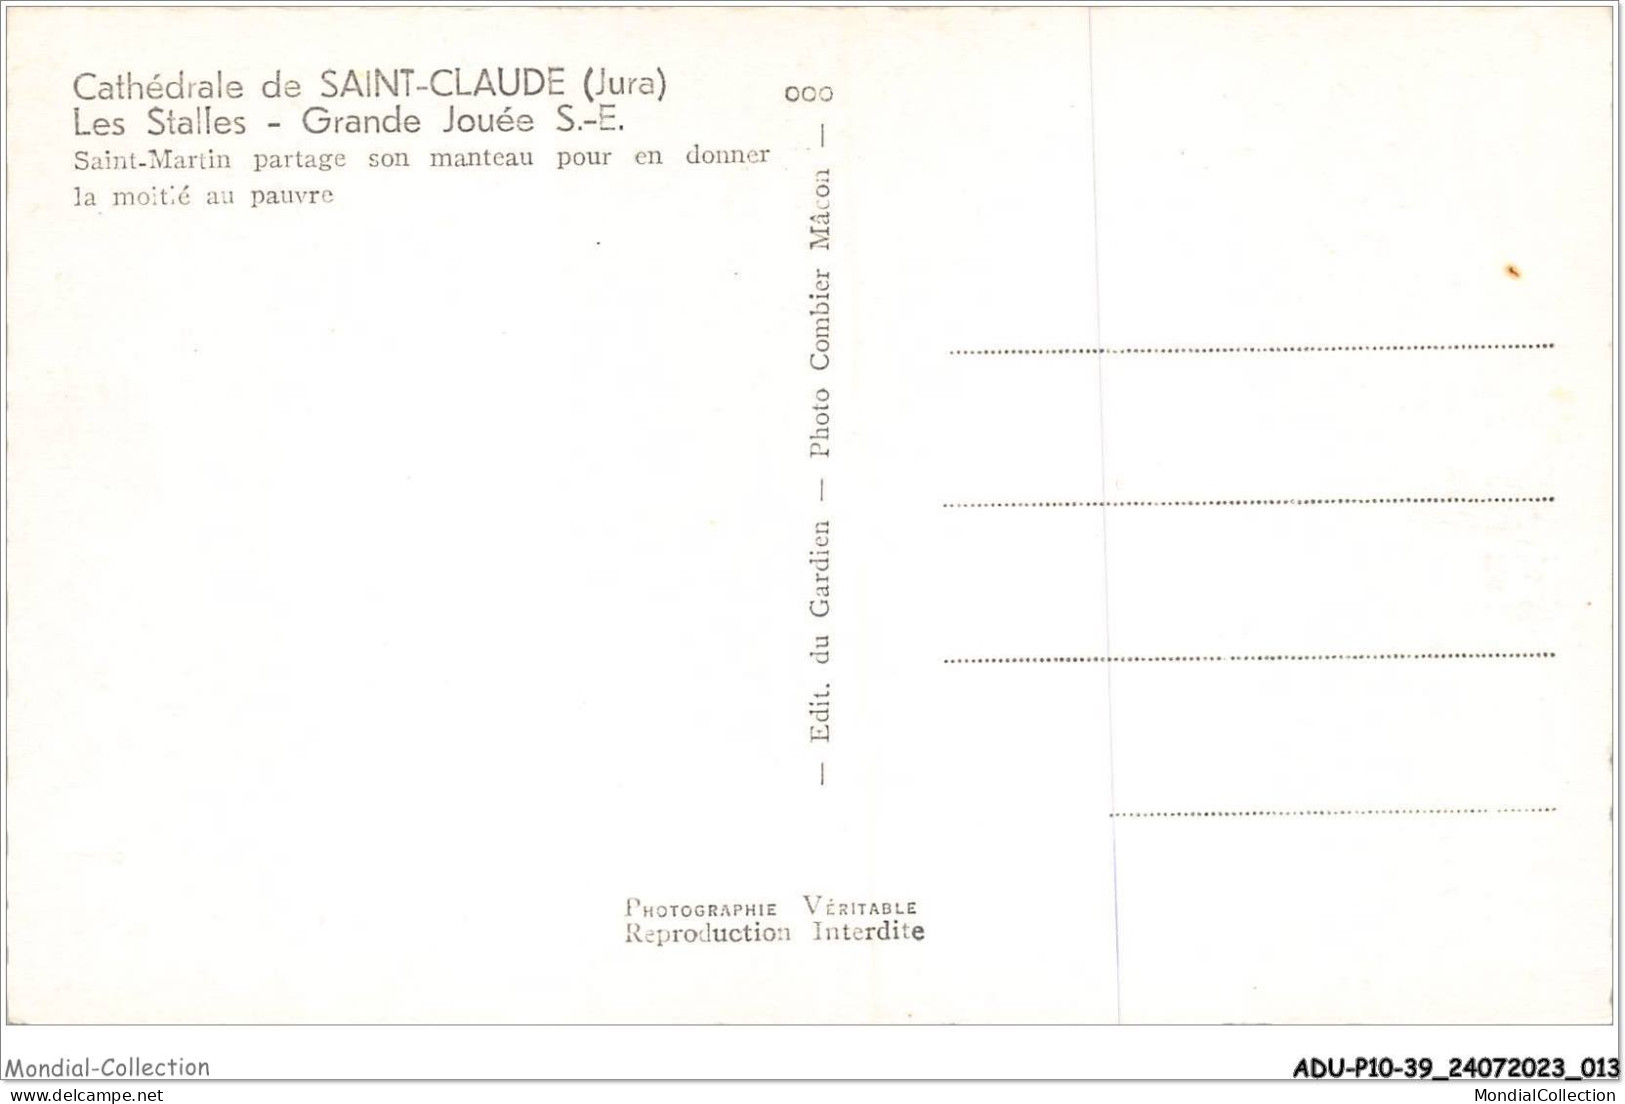 ADUP10-39-0820 - SAINT-CLAUDE - Cathédrale - Les Stalles - Grande Jouée S E  - Saint Claude